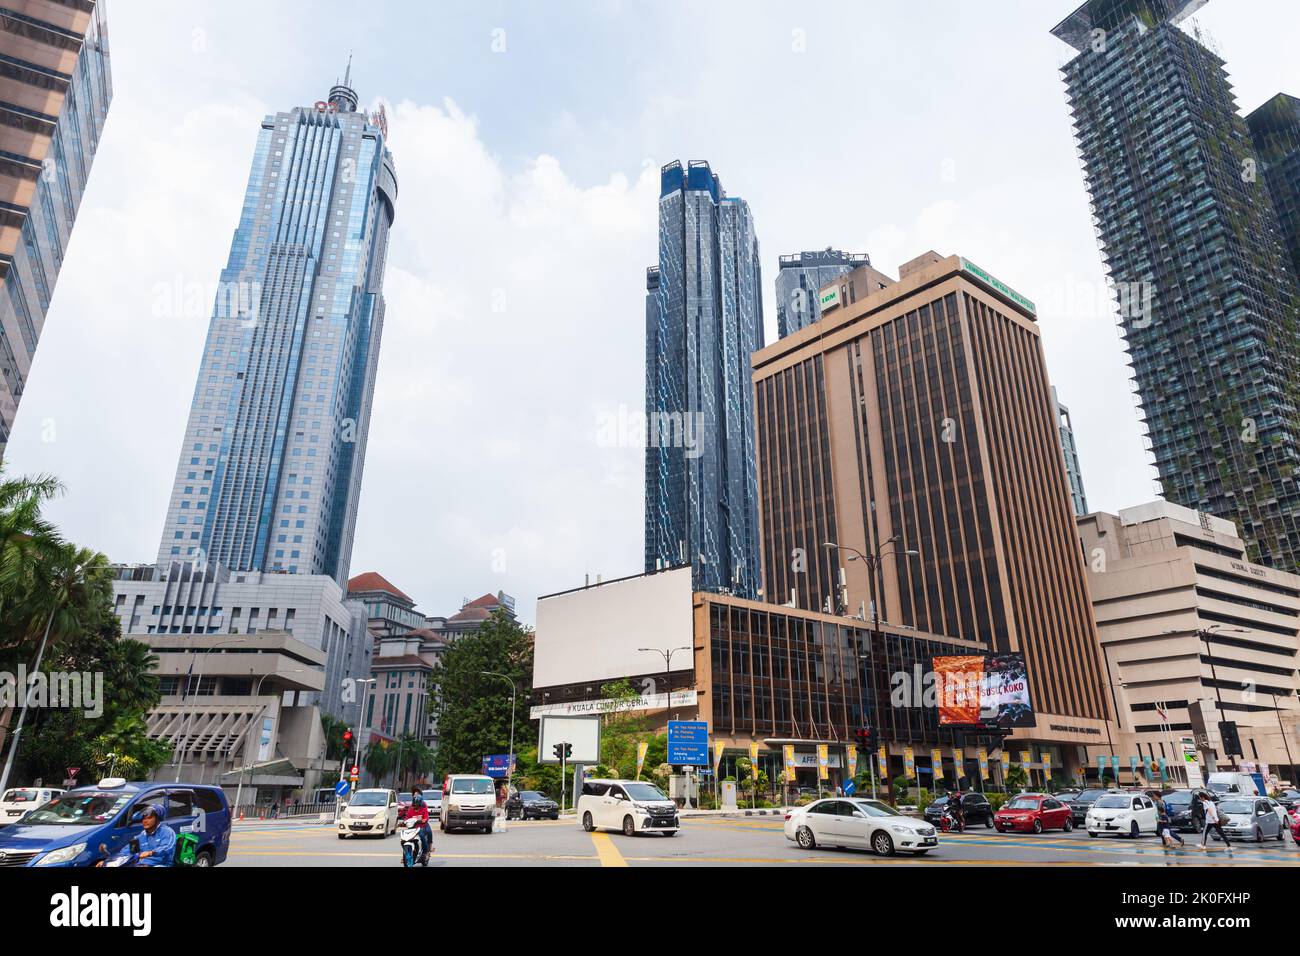 Kuala Lumpur, Malaisie - 25 novembre 2019 : vue sur la rue de Kuala Lumpur avec les gens ordinaires et les voitures Banque D'Images